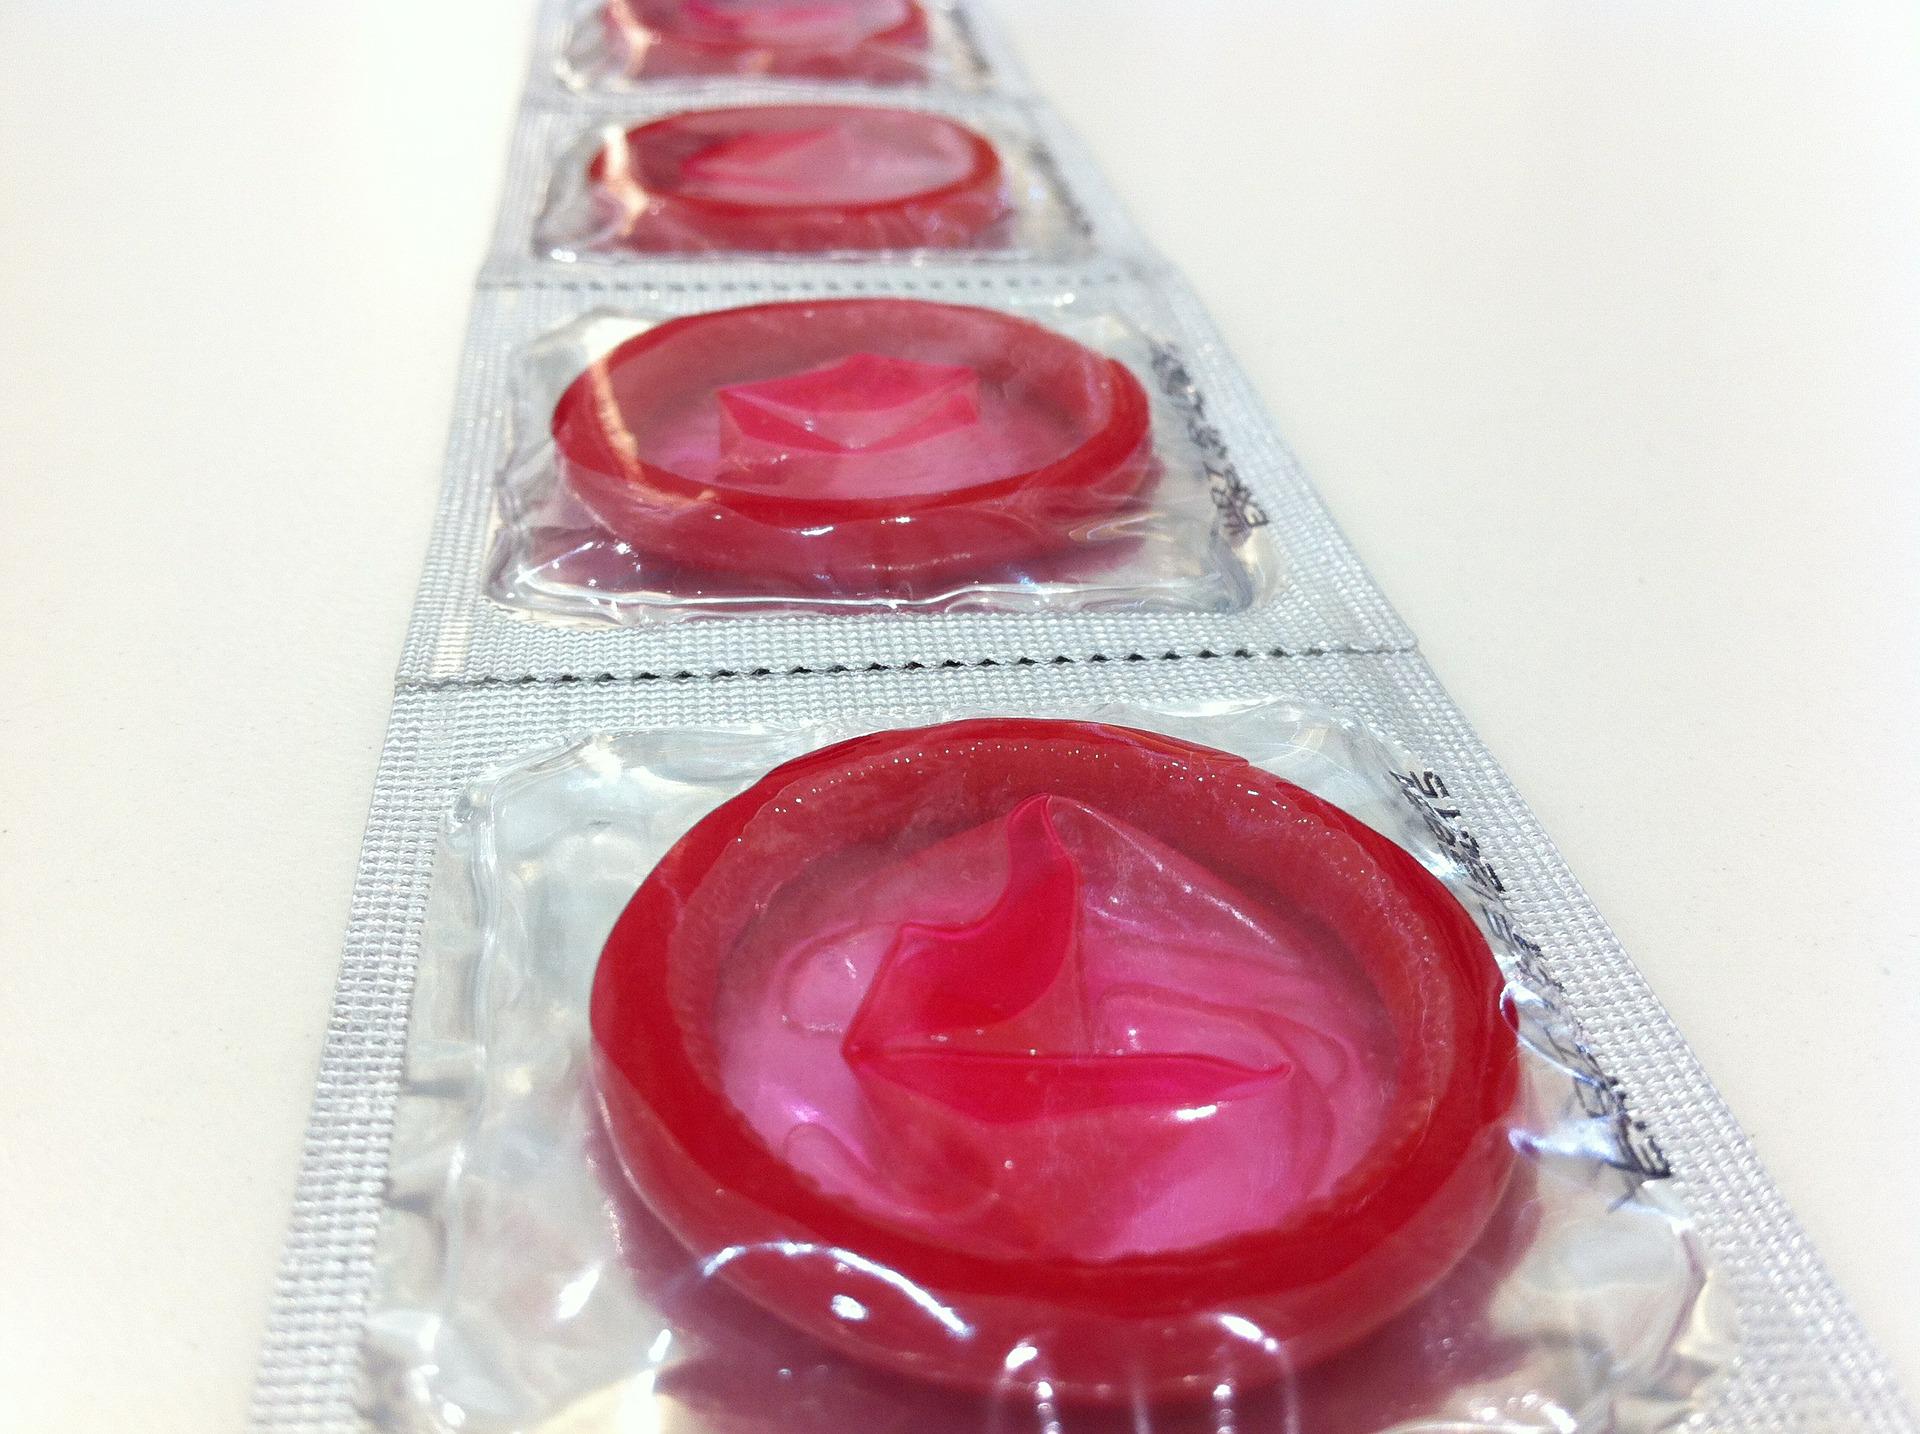 Nakon 35 godina zatvara se jedan od najvećih proizvođača kondoma u Europi